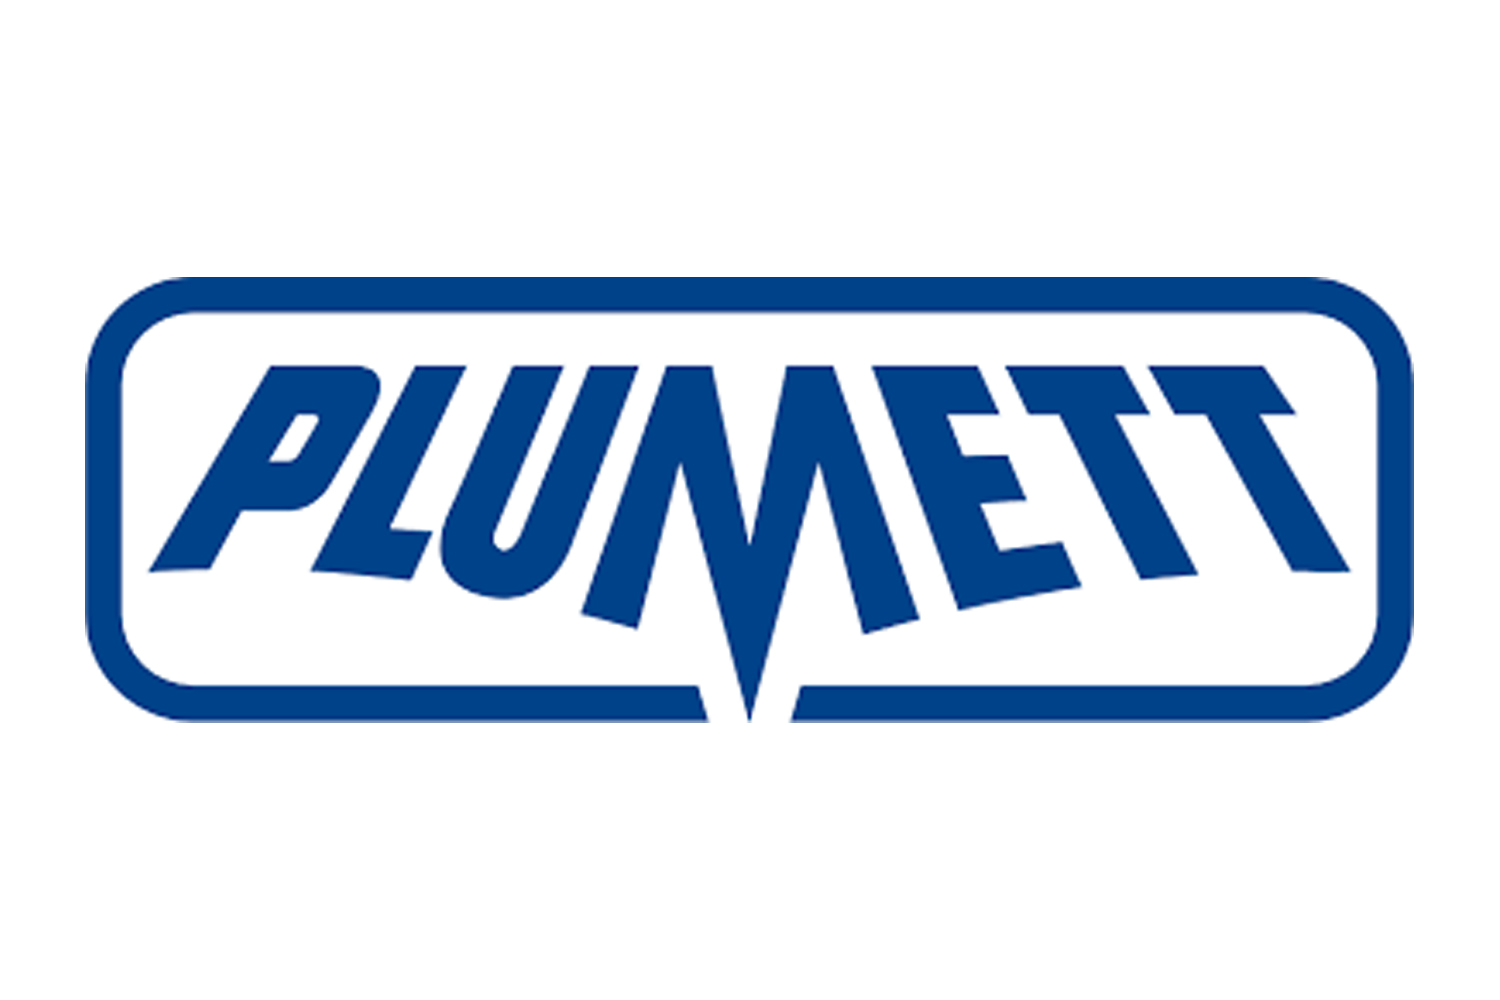 plumett